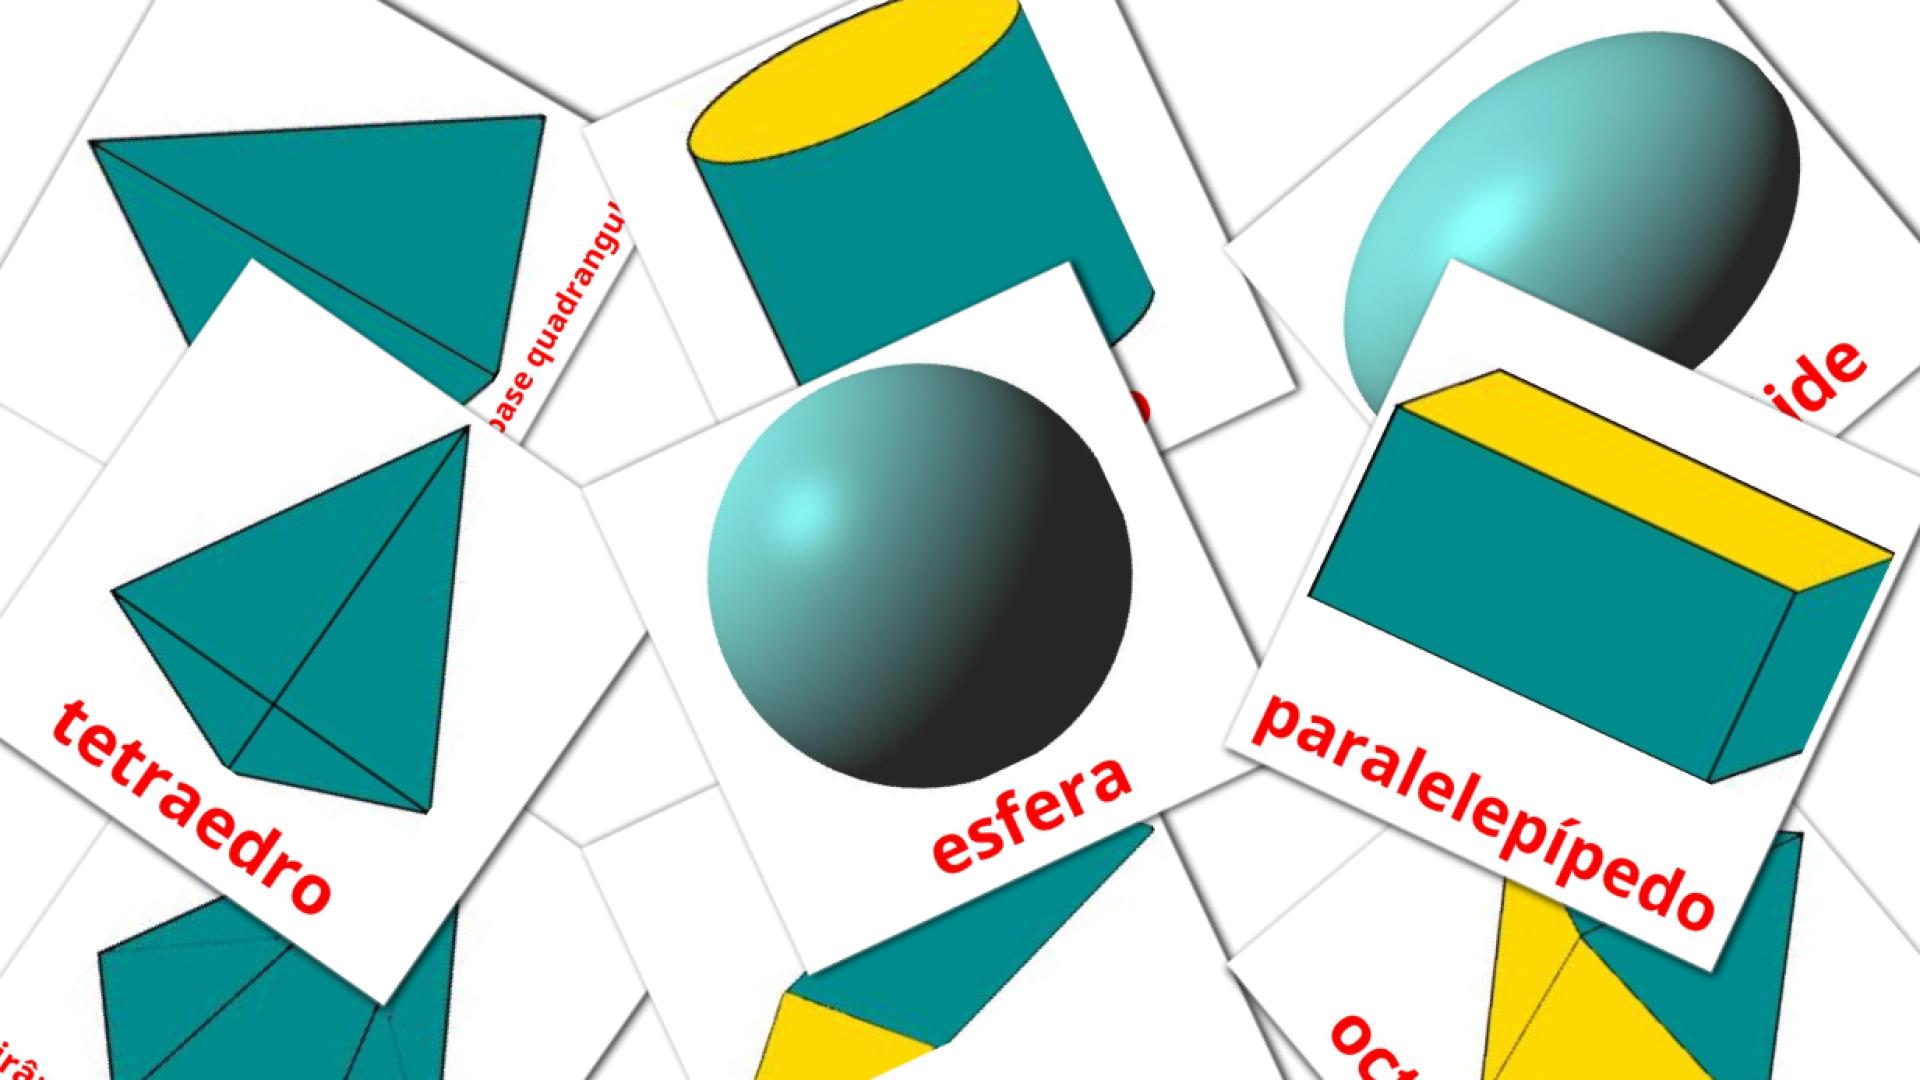 Bildkarten für Sólidos geométricos